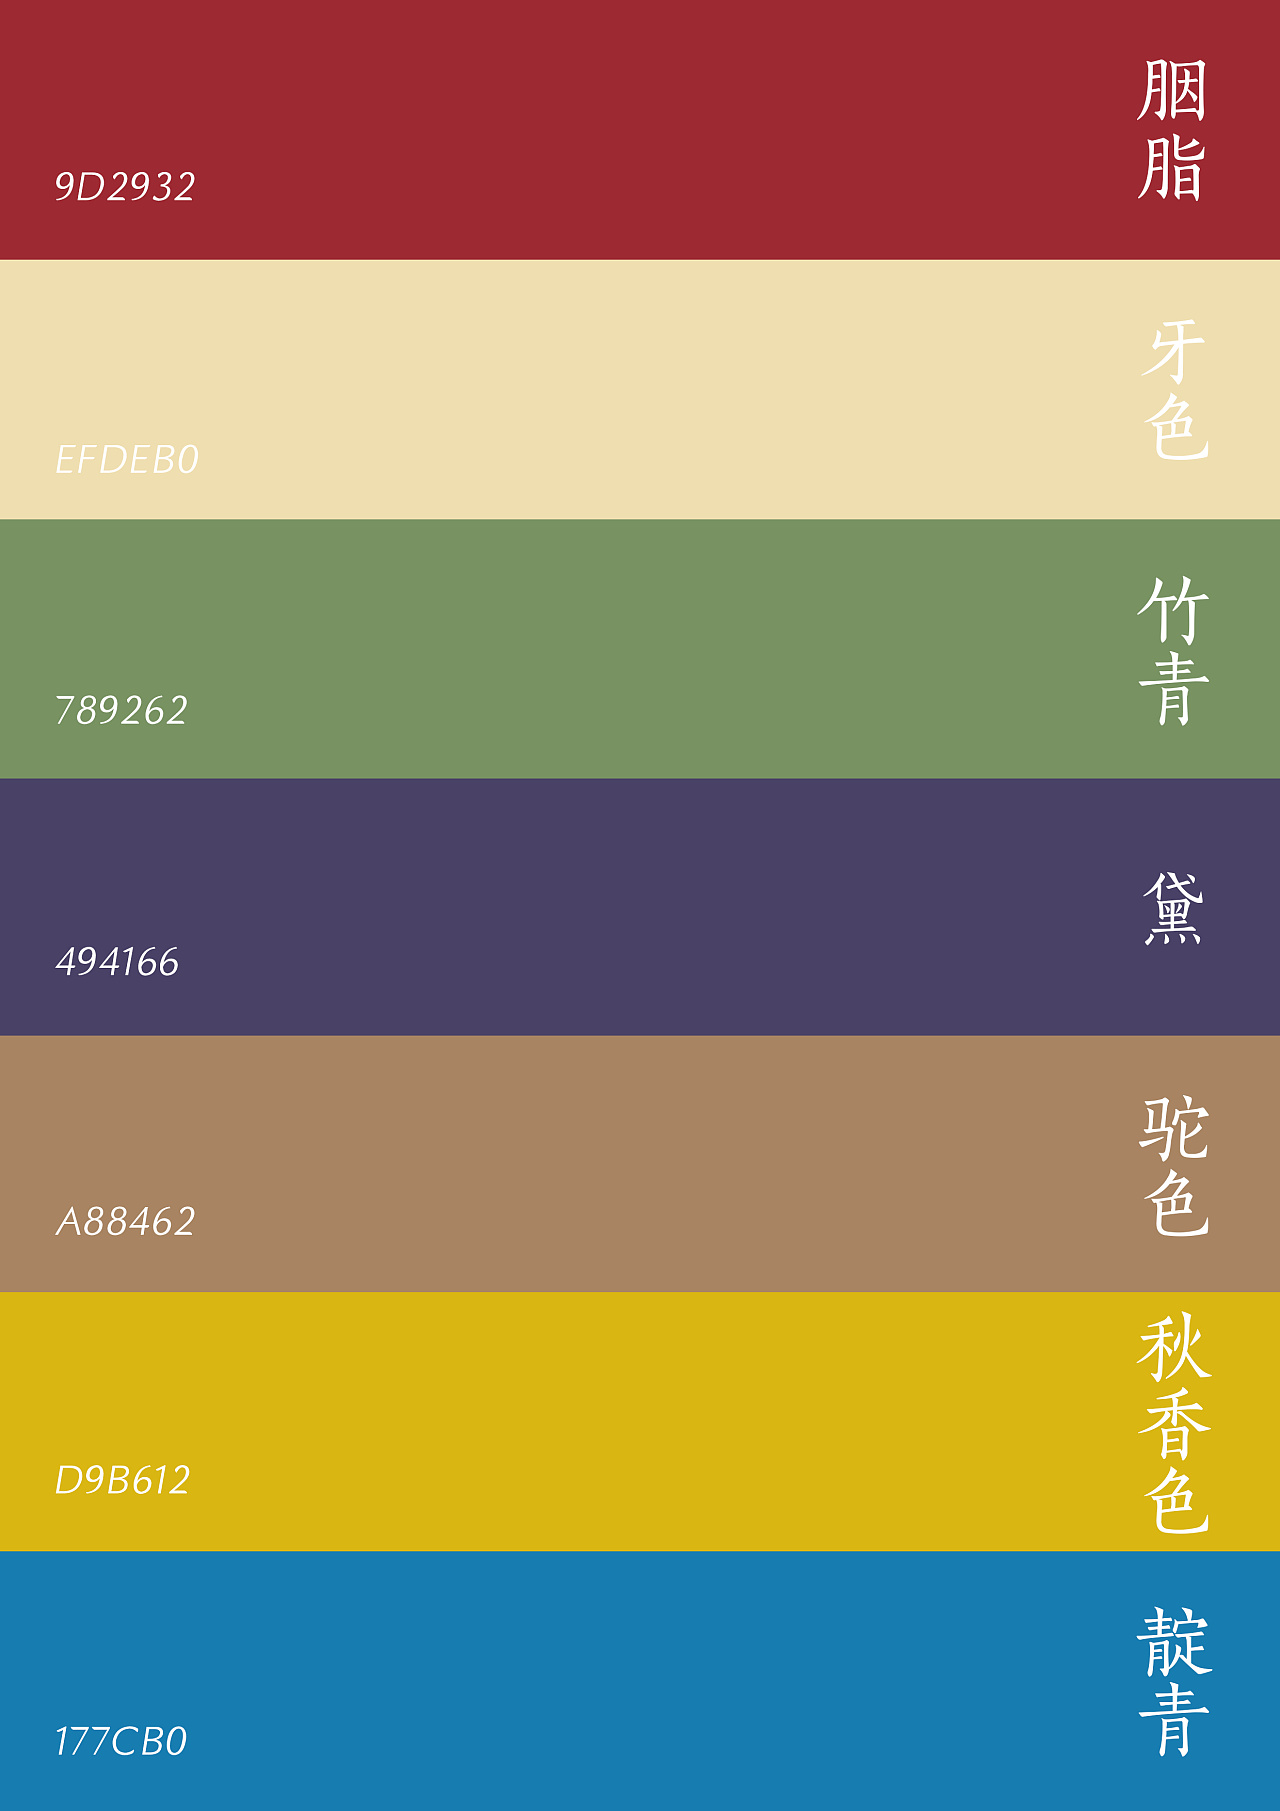 中国传统颜色及现代工业颜色对照表，两张值得收藏的颜色图表-搜狐大视野-搜狐新闻